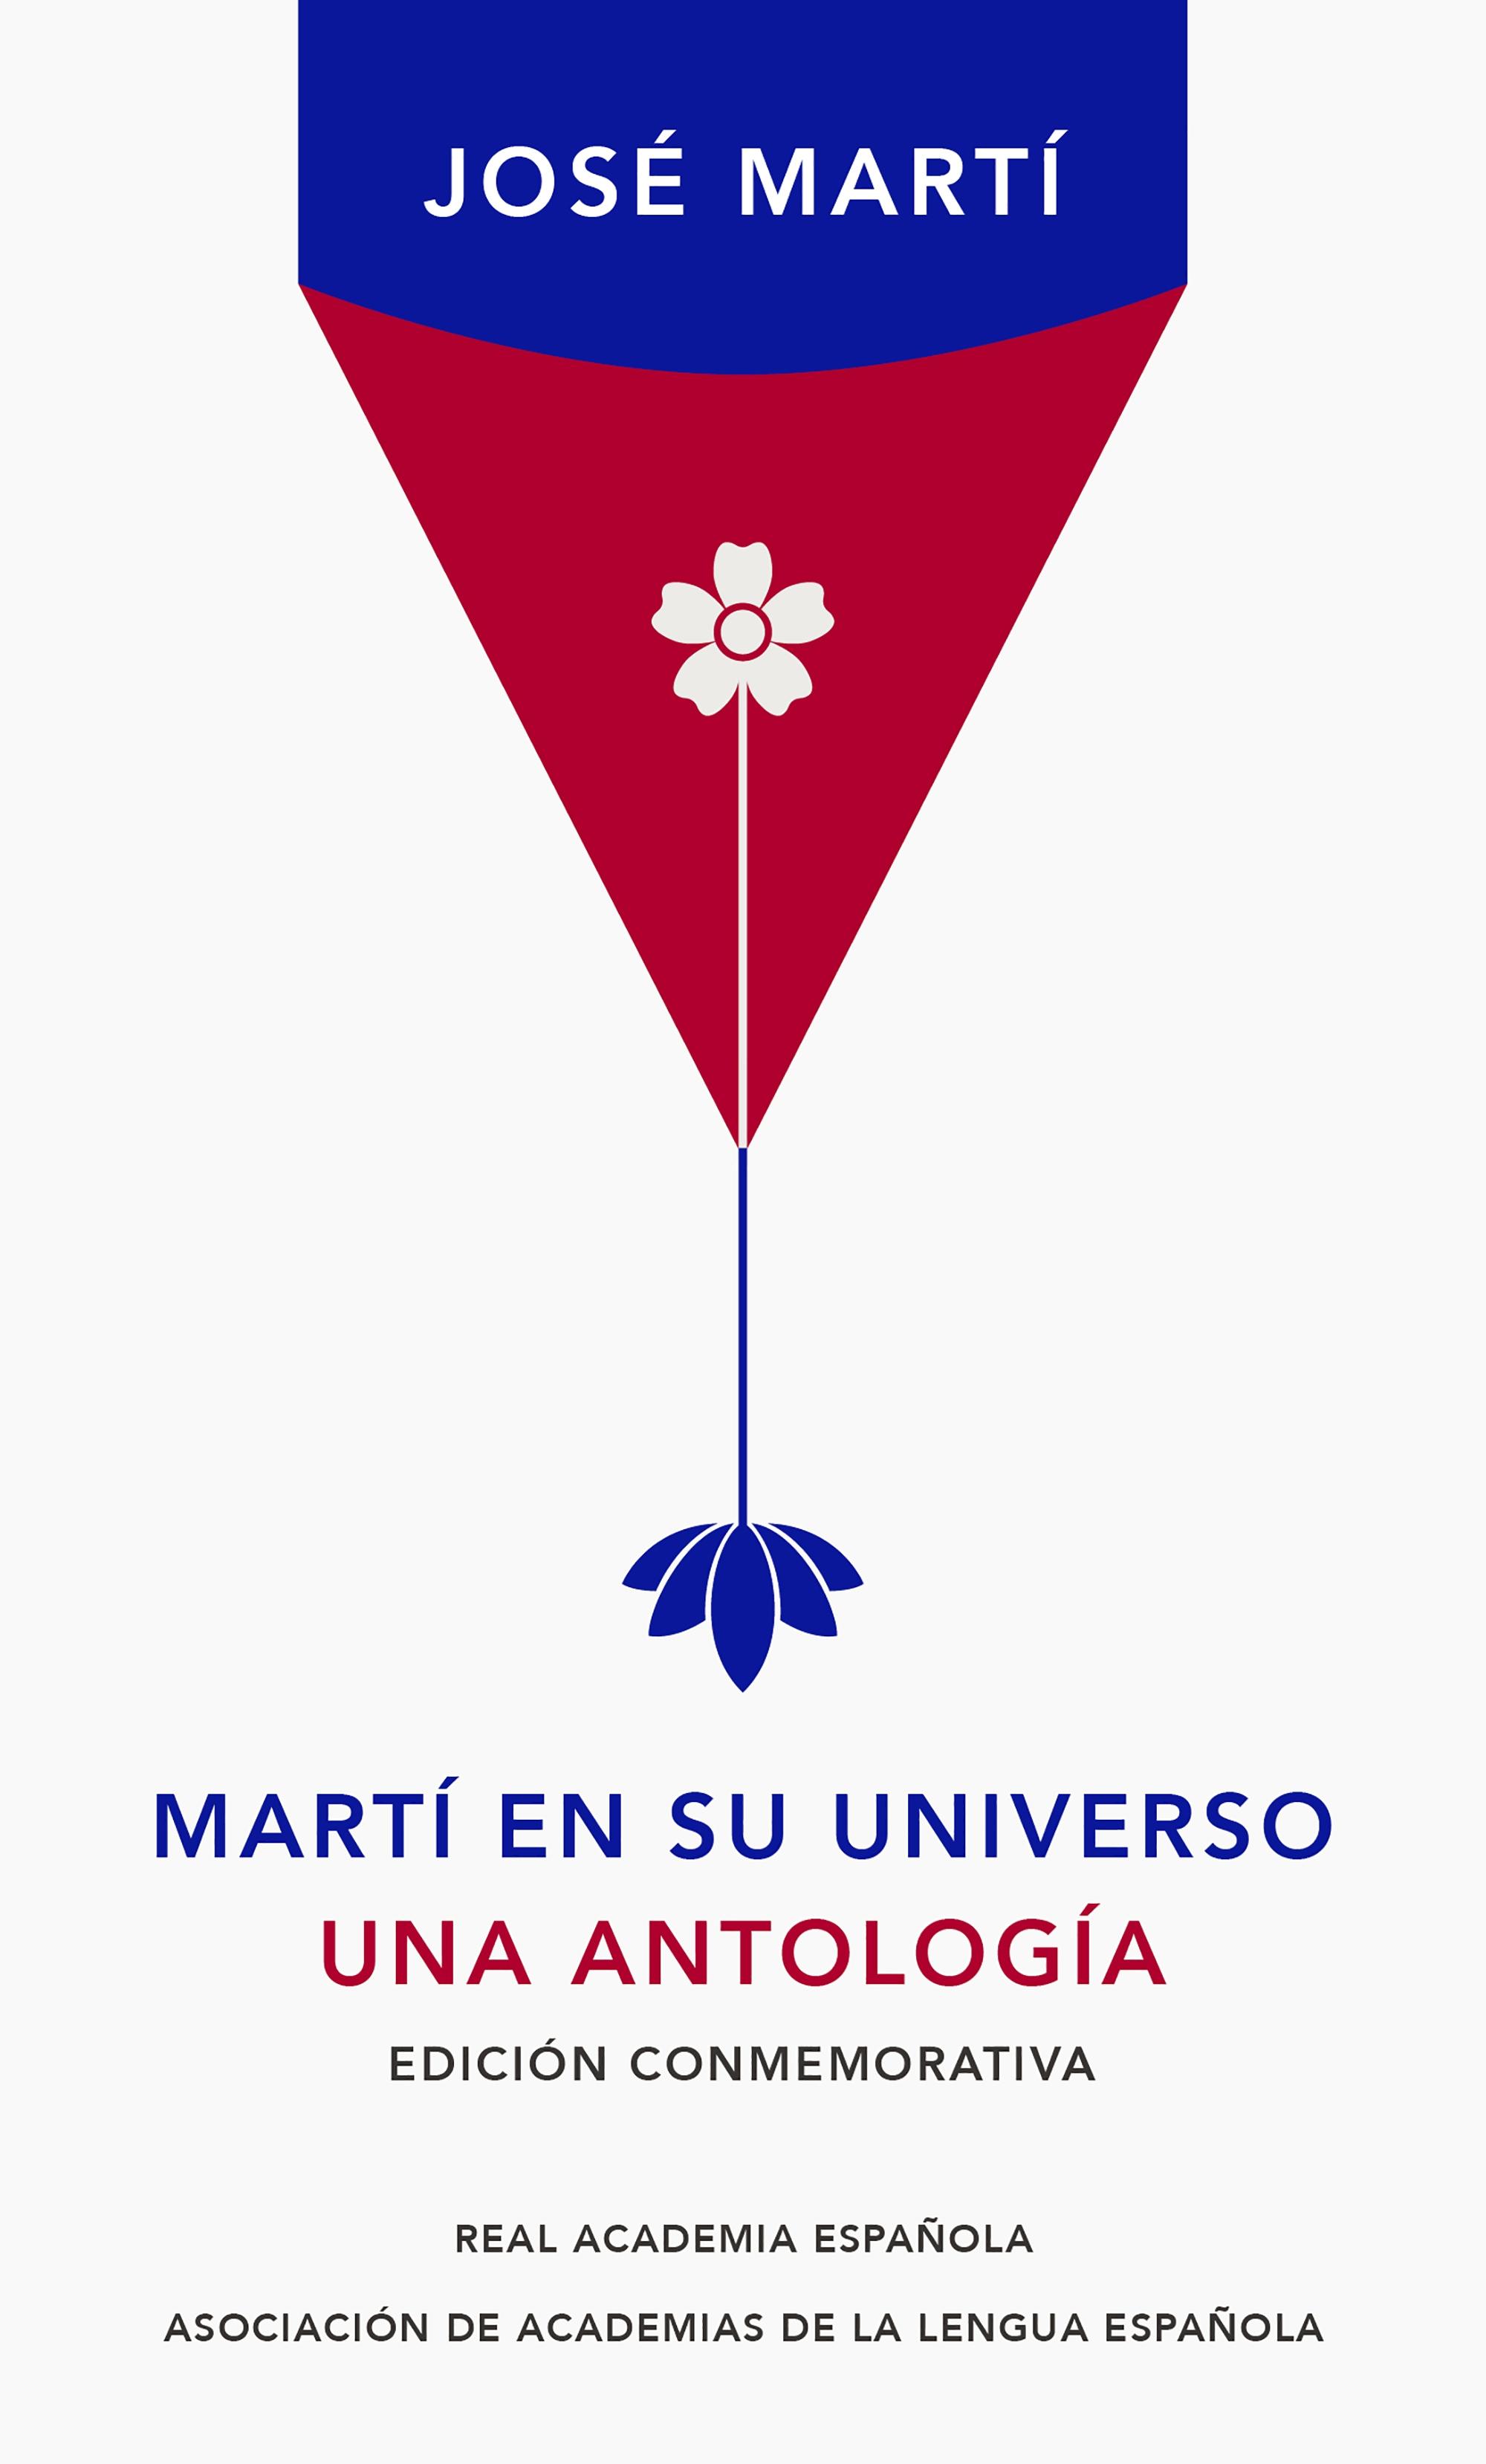 Martí en su universo "Una antología. Edición conmemorativa"